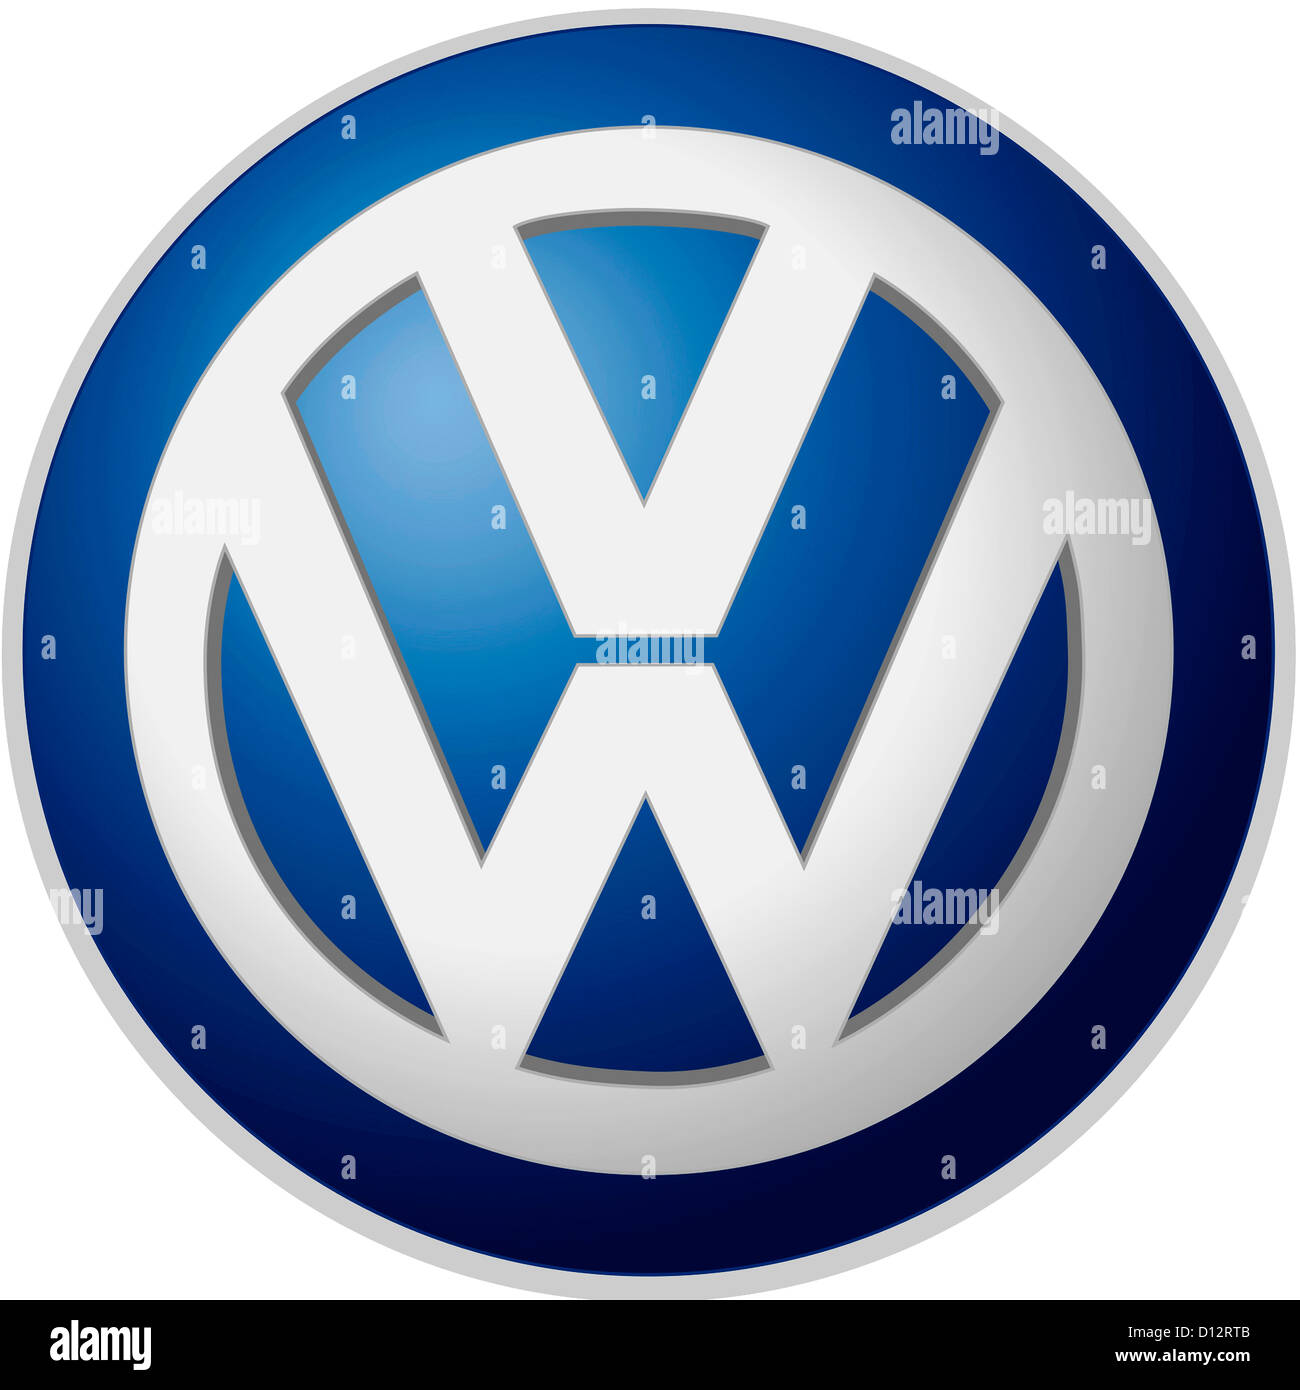 Logotipo de la empresa de la corporación de la industria automotriz alemana Volkswagen AG, con sede en Wolfsburg. Foto de stock